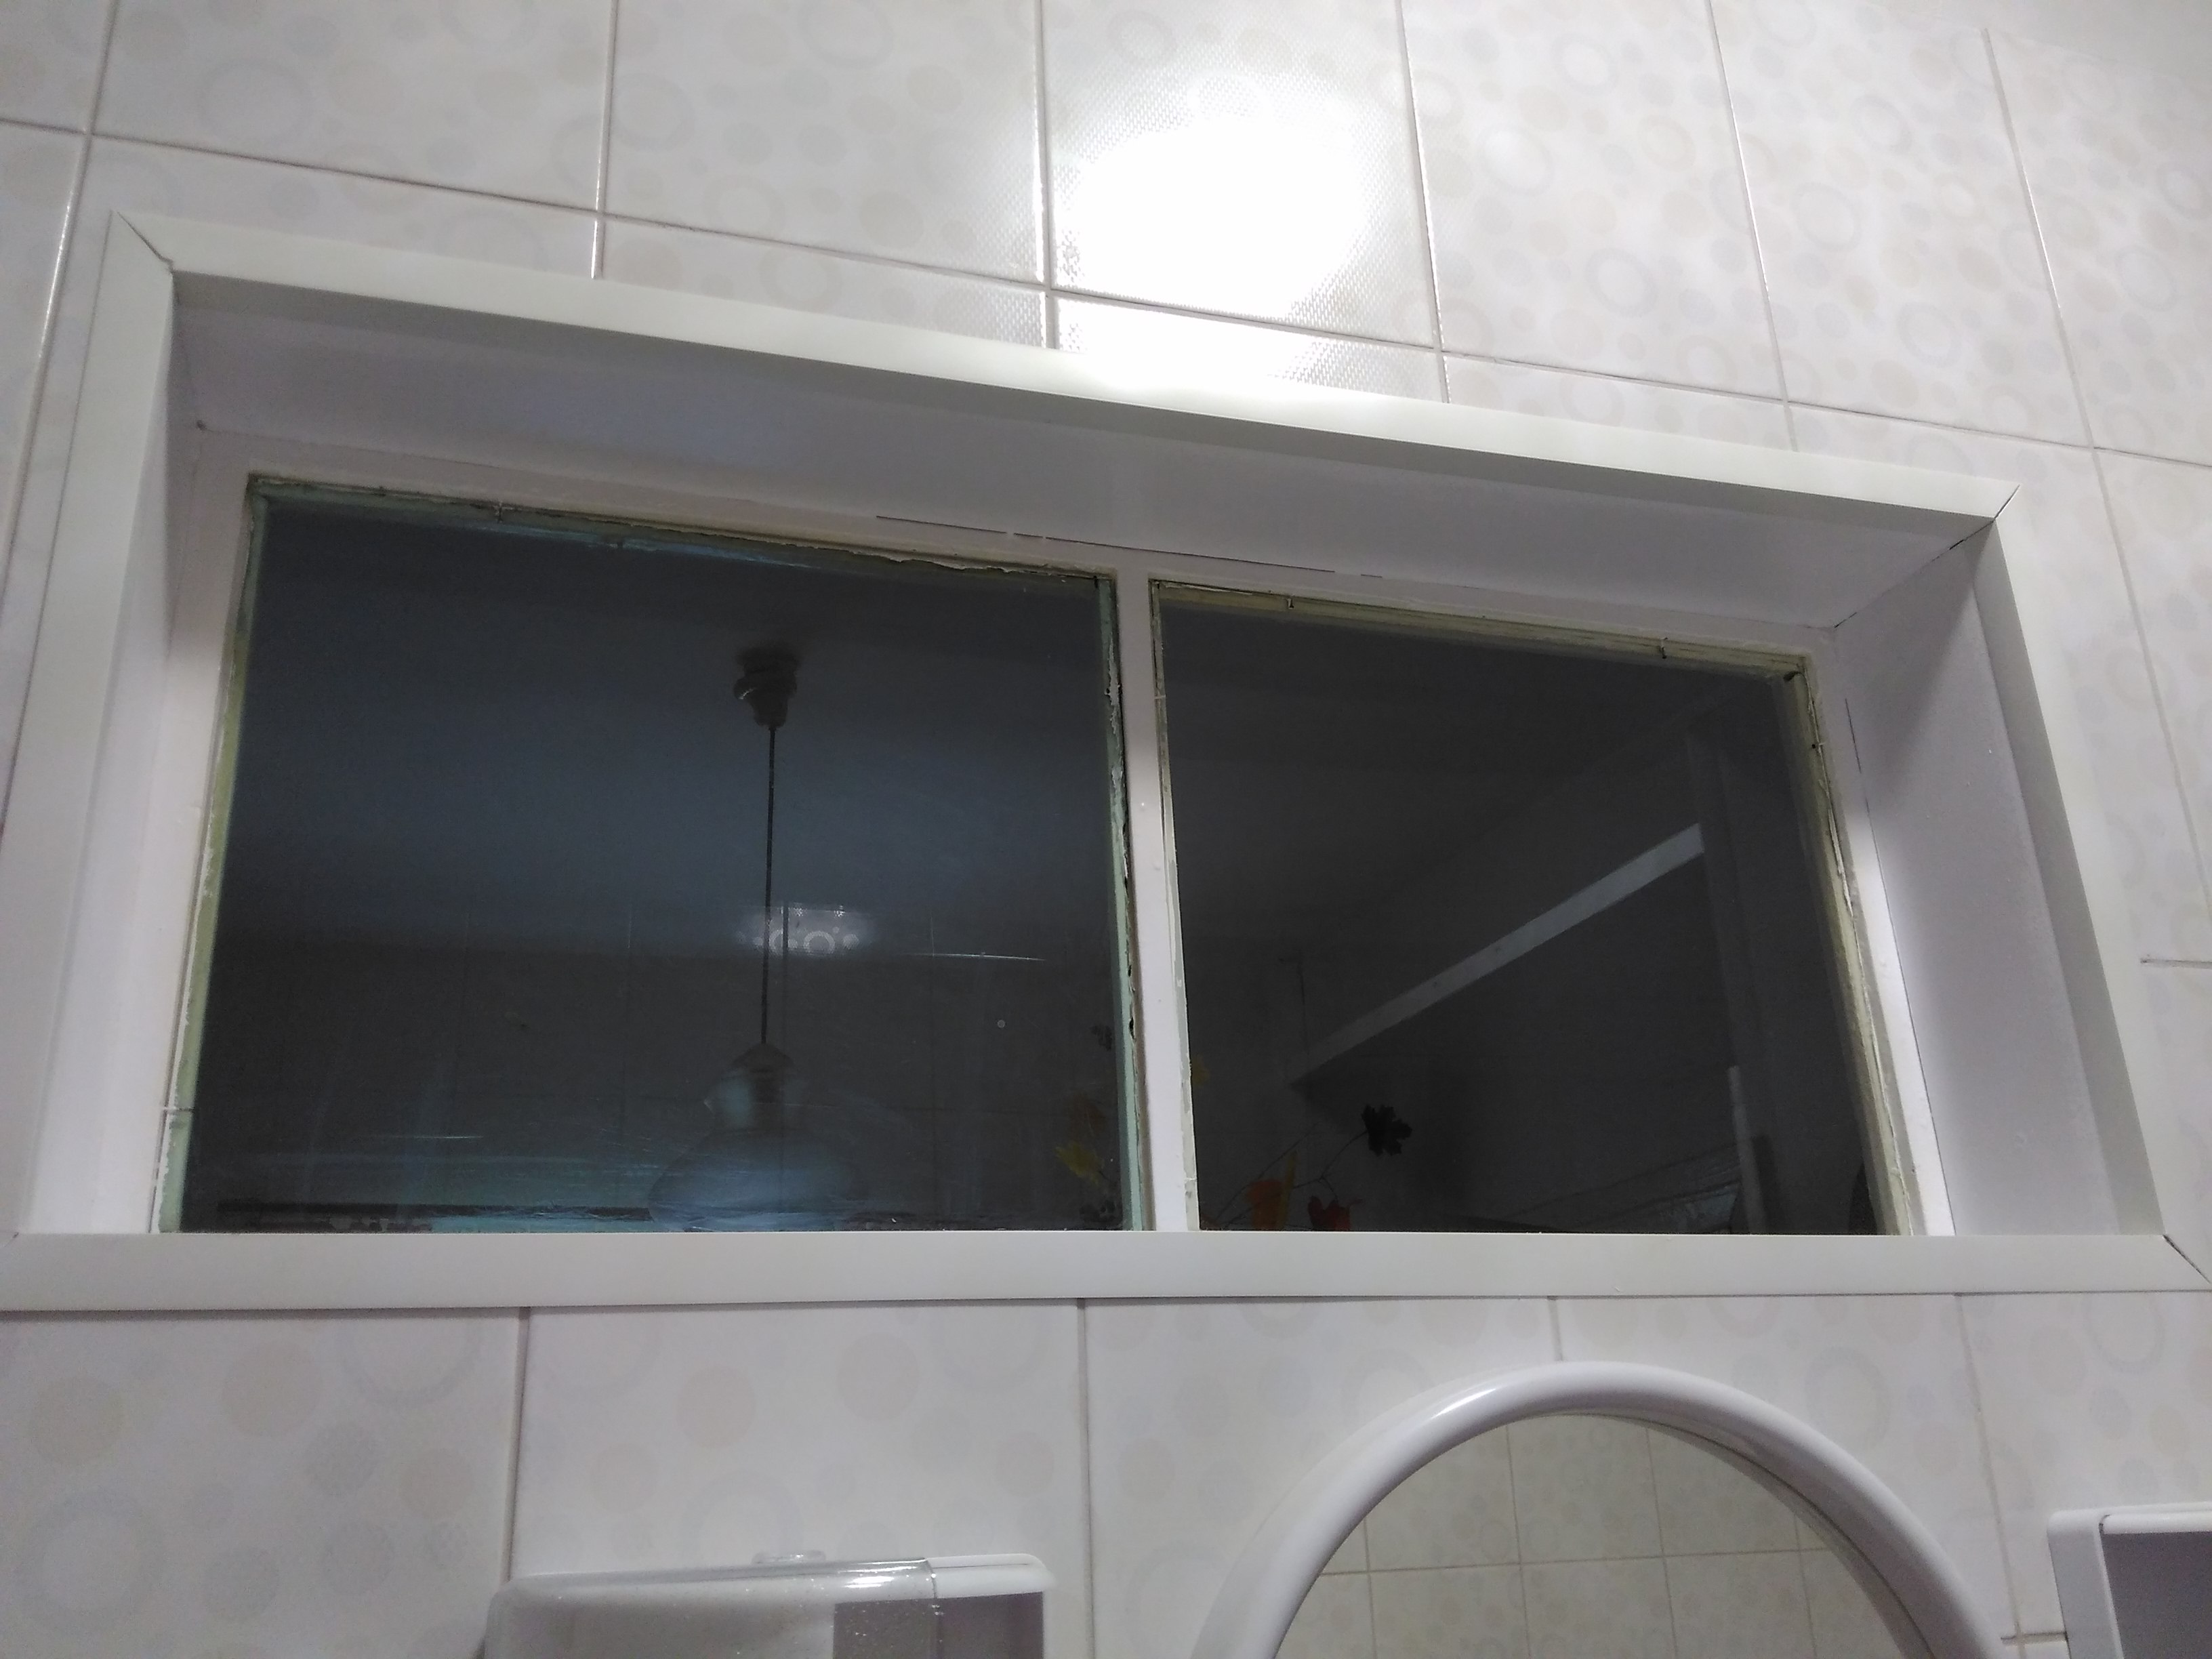  в старых домах делали окно между ванной и кухней?